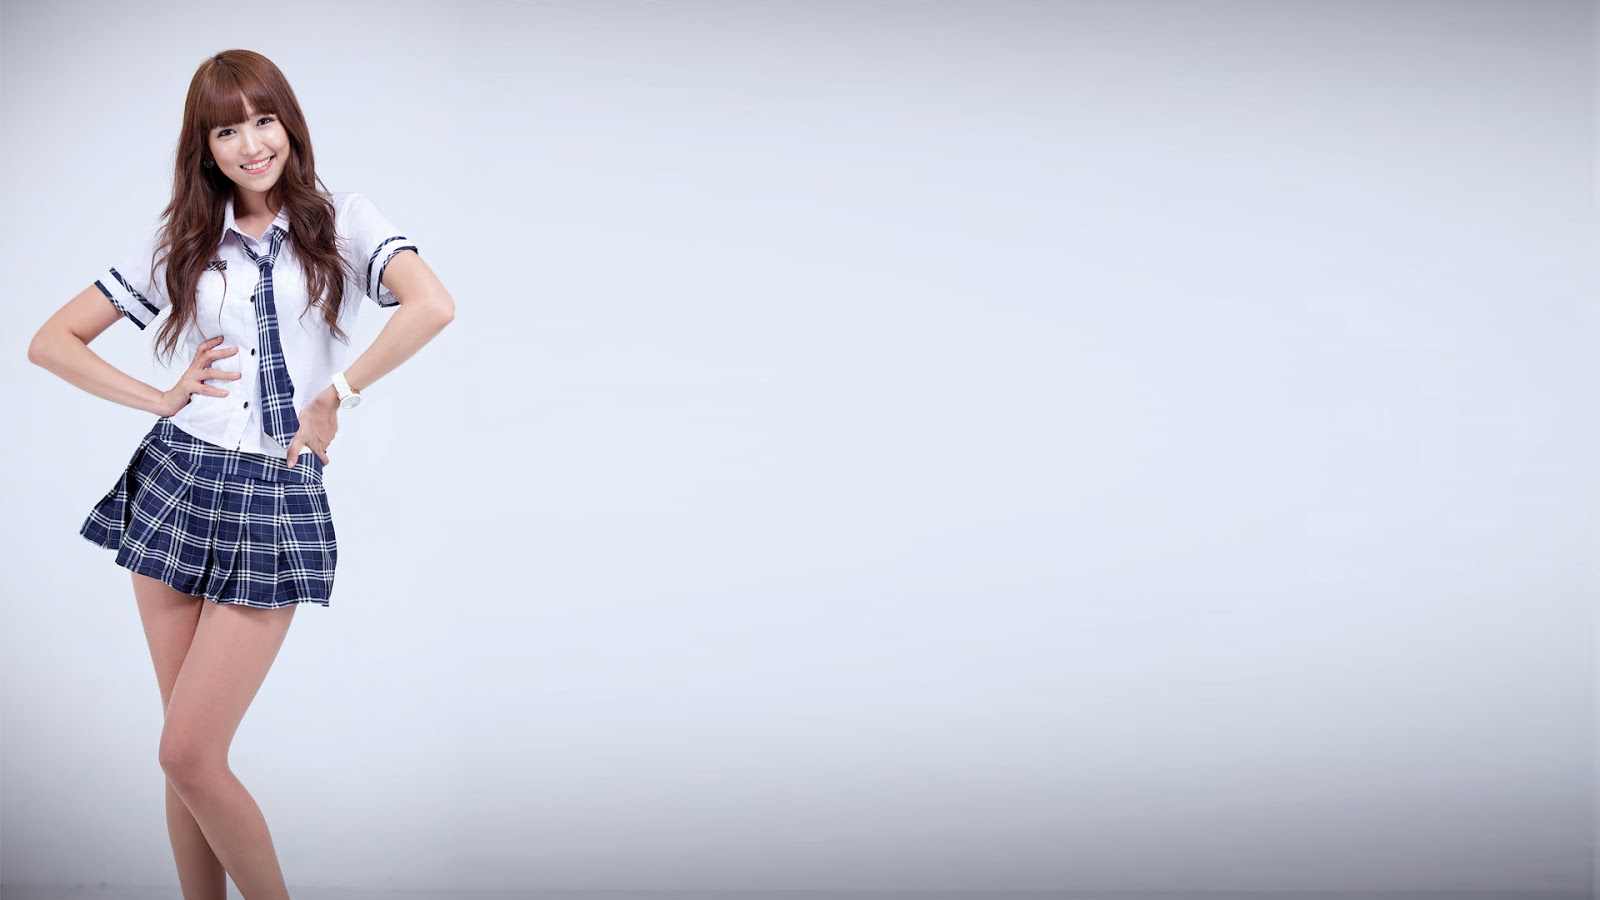 한국 소녀 배경 화면 1920x1080,의류,하얀,패션 모델,어깨,격자 무늬